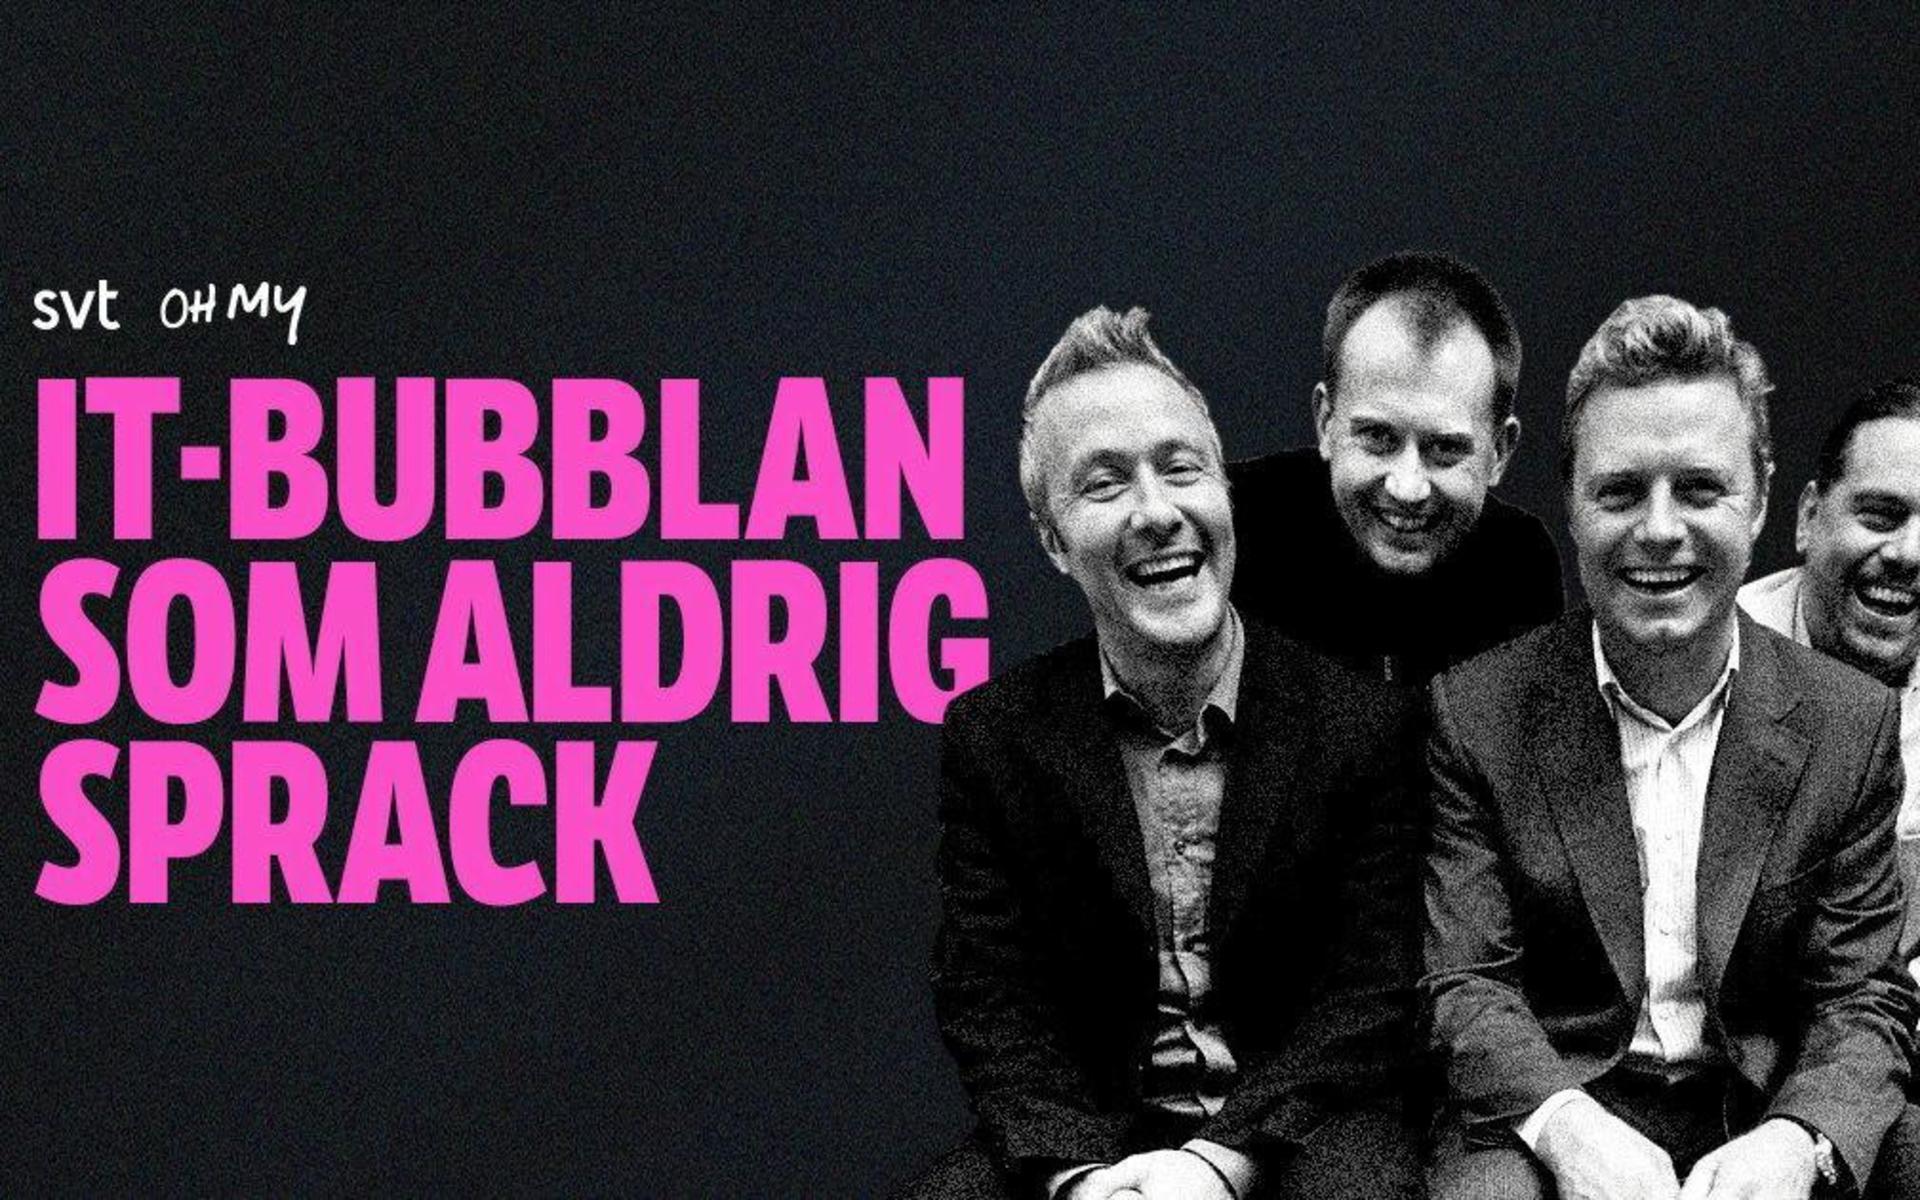 I ”IT-bubblan som aldrig sprack” på SVT play skildrar Christian Albinsson och Patrik Ljungman från Halmstad it-pionjärernas resa på ett både spännande och roligt sätt.